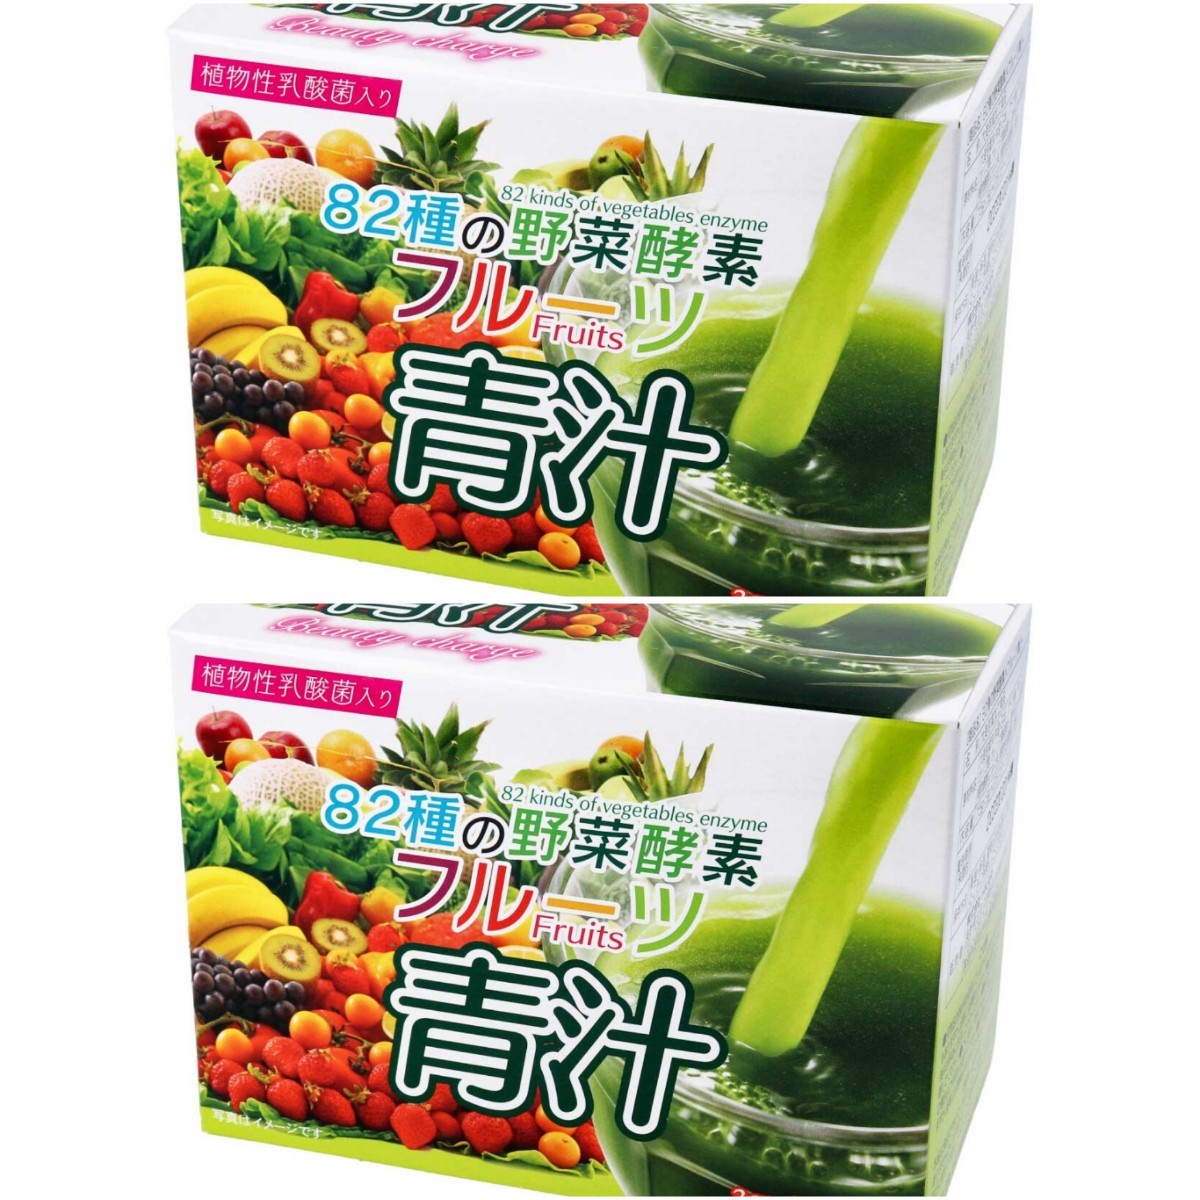 青汁 腸活サポート青汁 82種の野菜酵素 炭 ミックスフルーツ味